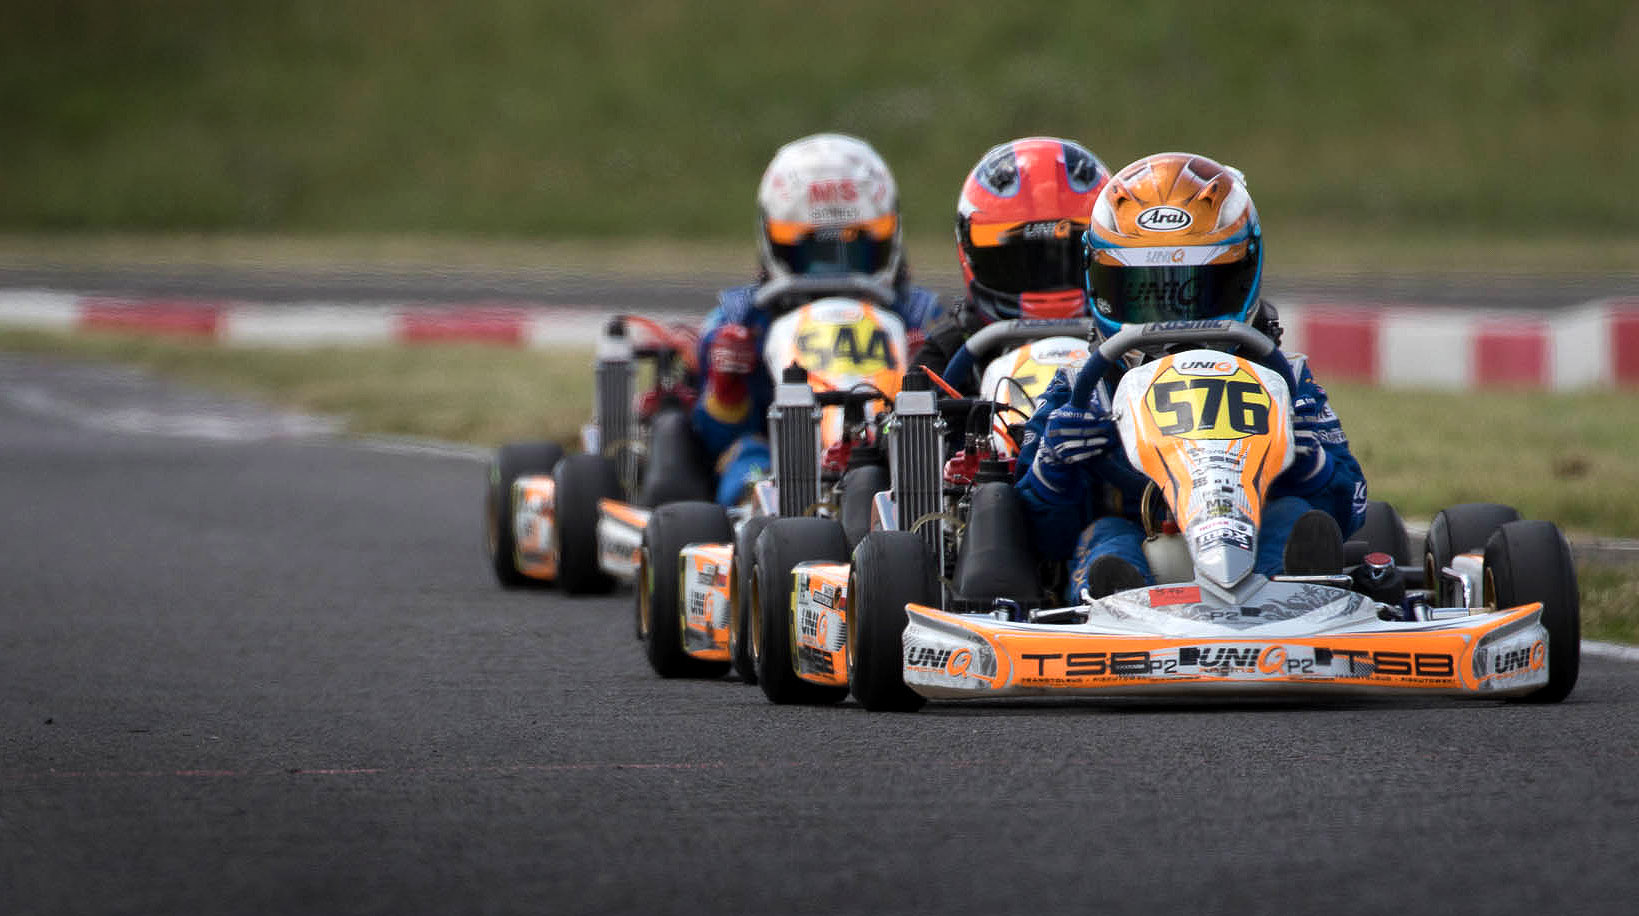 Kierowcy w tym sezonie pojadą w trzech wyścigach w CEE. Prefinale, finale i super finale.